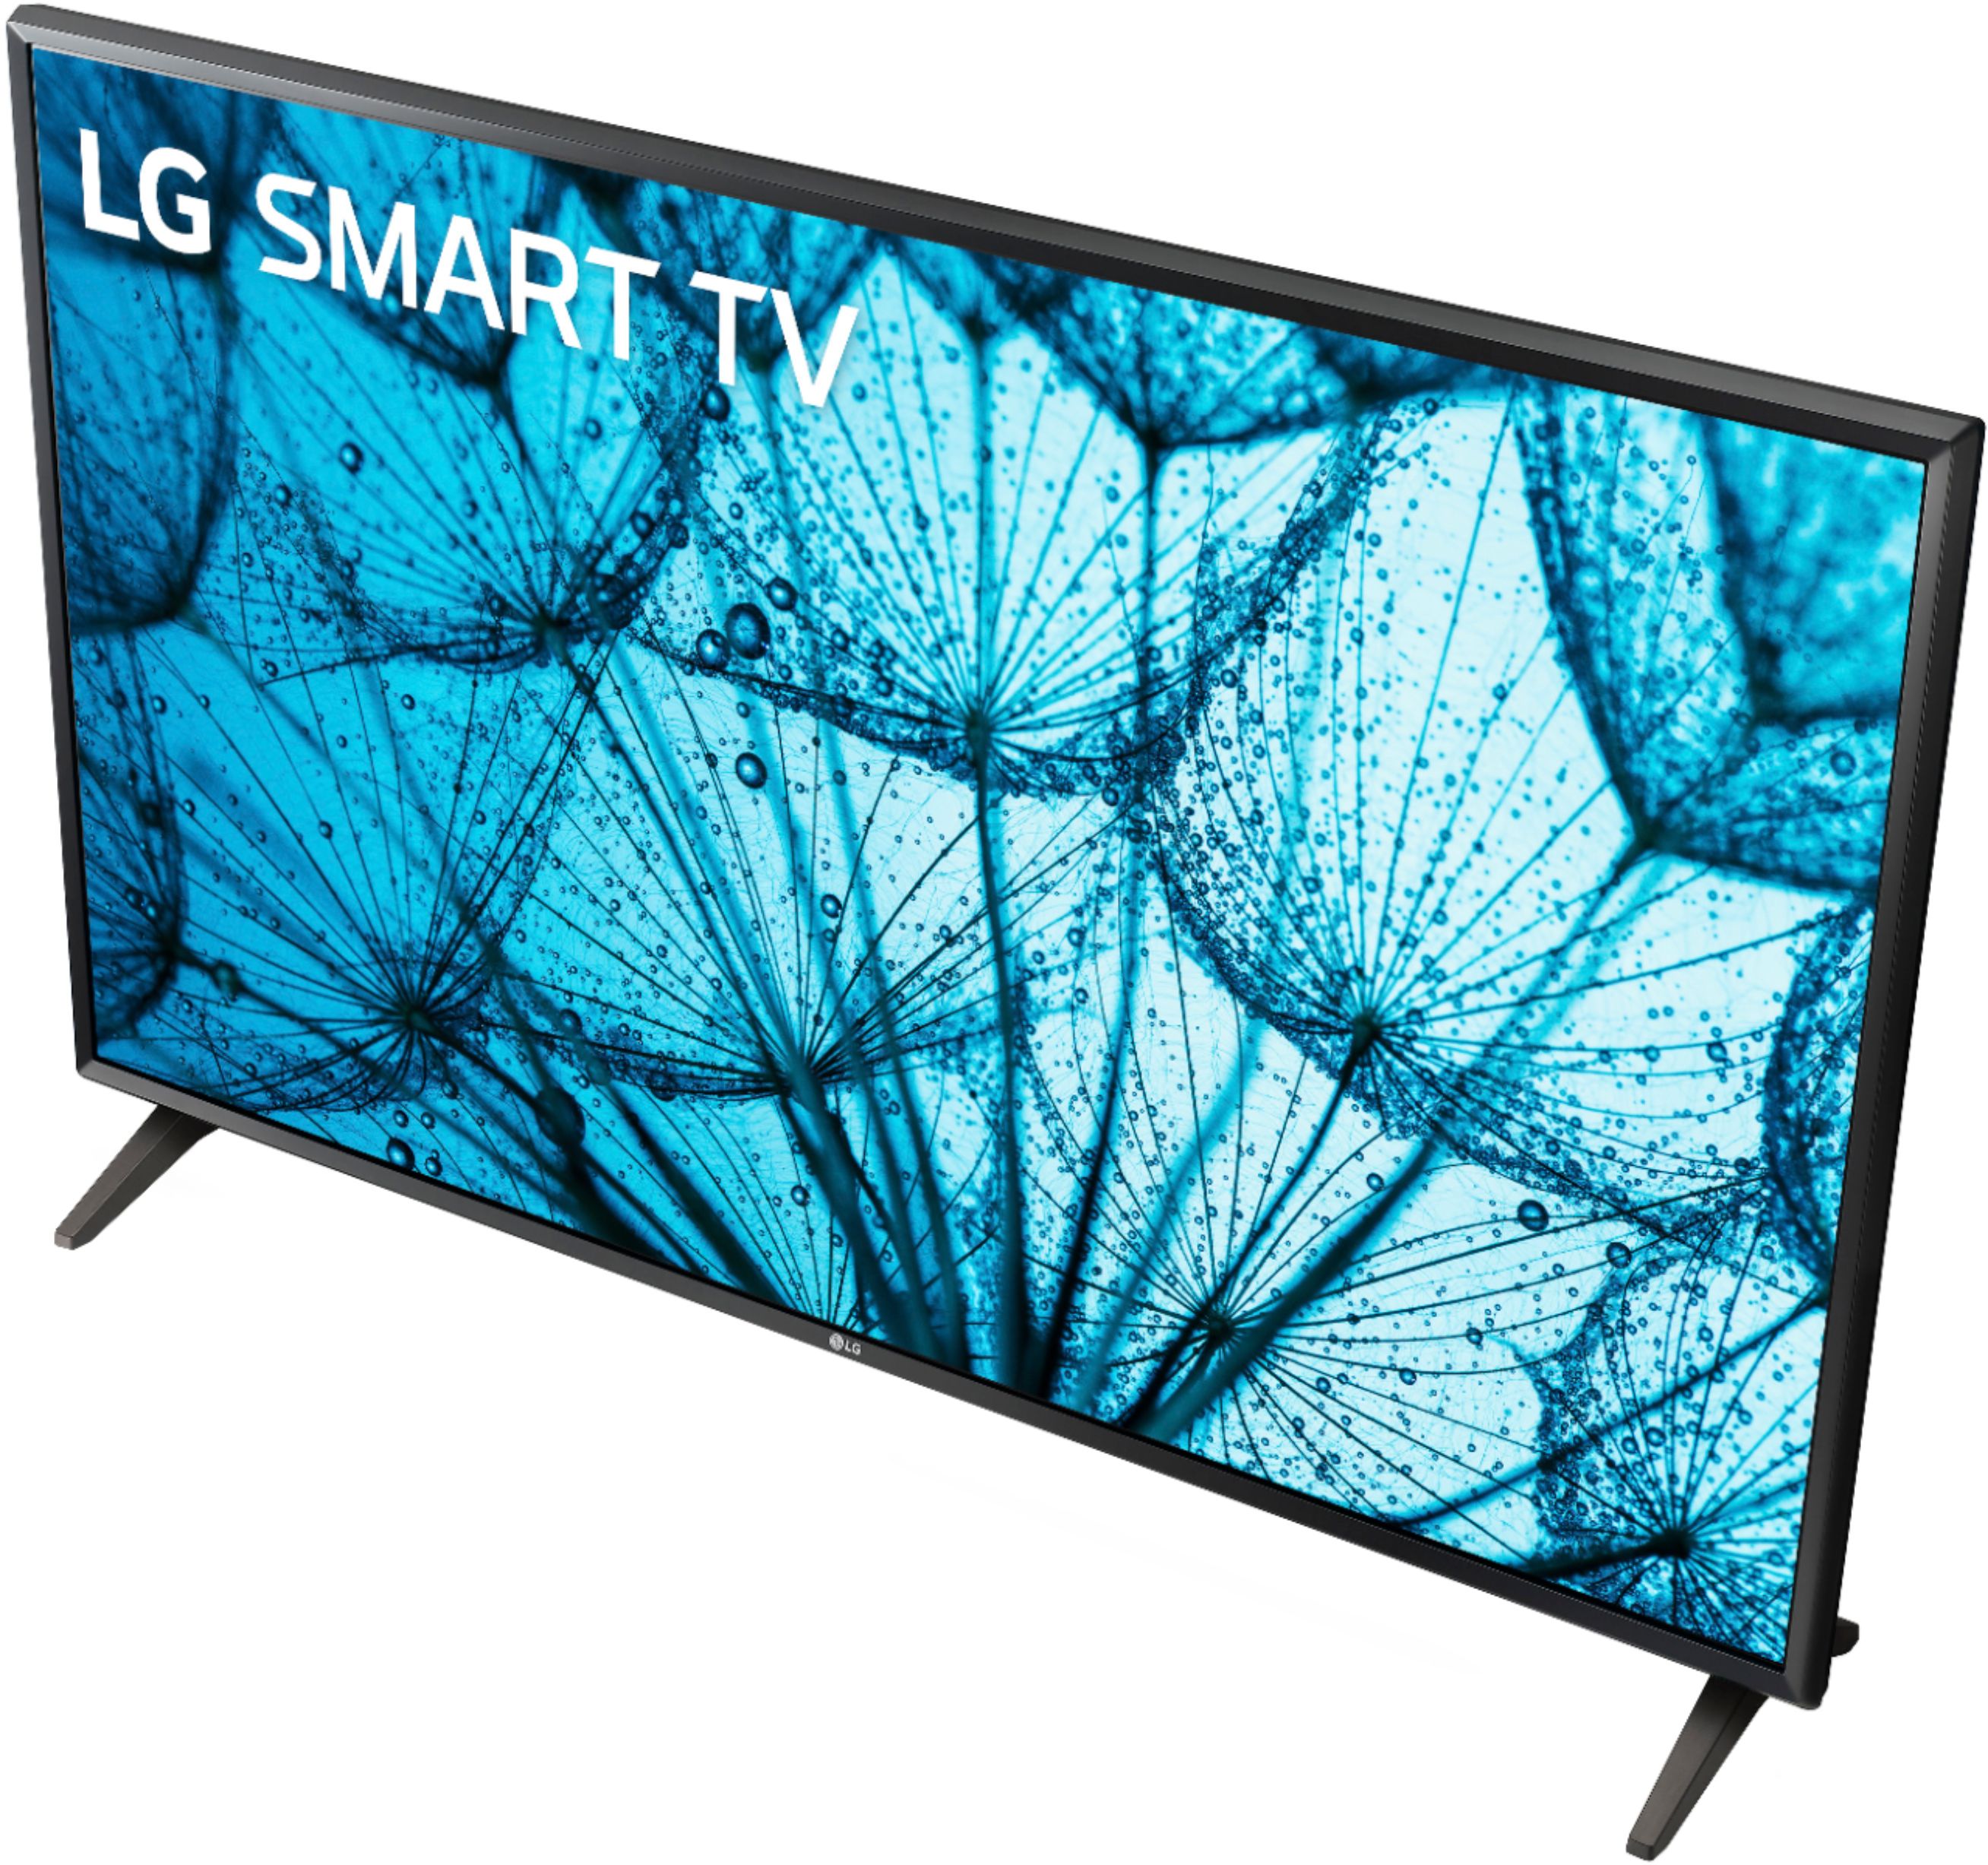  LG 32LM577BPUA - Paquete de TV LED HD Smart webOS de 32 pulgadas  con paquete de protección mejorada CPS de 1 año : Electrónica